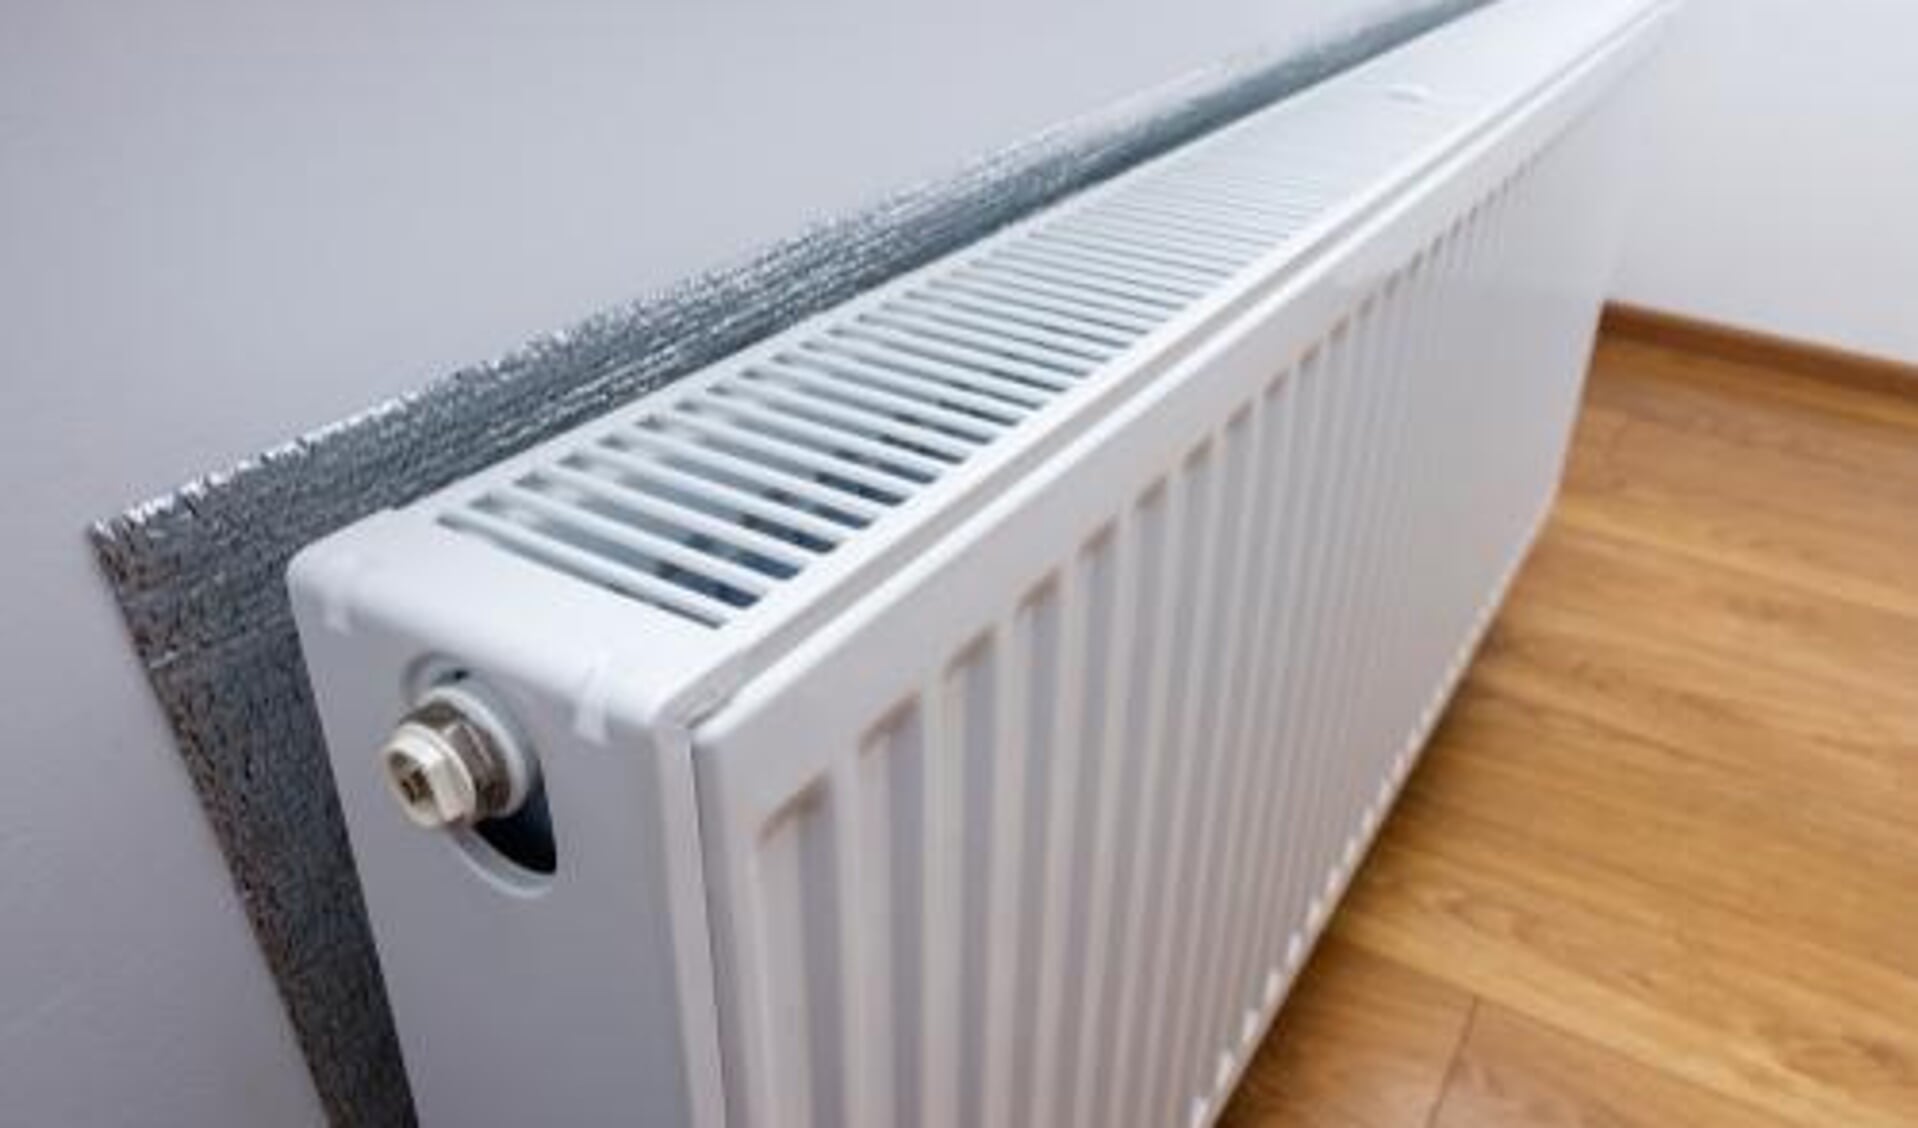 Plaatsing van radiatorfolie is een van de tips om te besparen op de energiekosten.